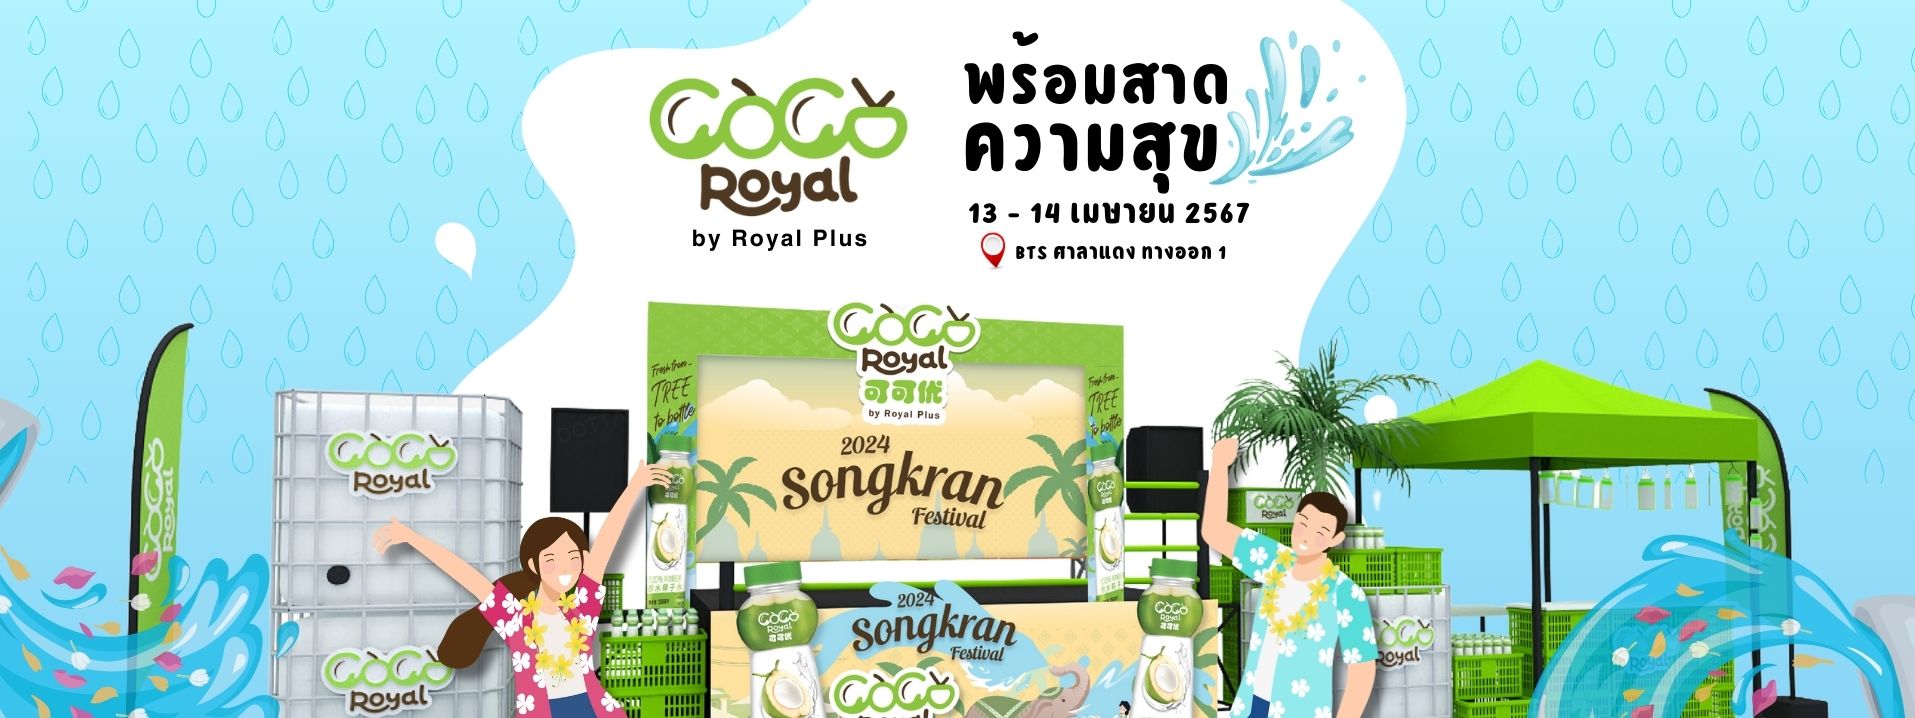 Happy Songkran Day พบ COCO ROYAL @Silom Road !!! เตรียมพร้อมสาดความสดชื่นให้ชุ่มฉ่ำ ต้อนรับกระแสนักท่องเที่ยวทั่วโลก 13 – 14 เมษายน นี้